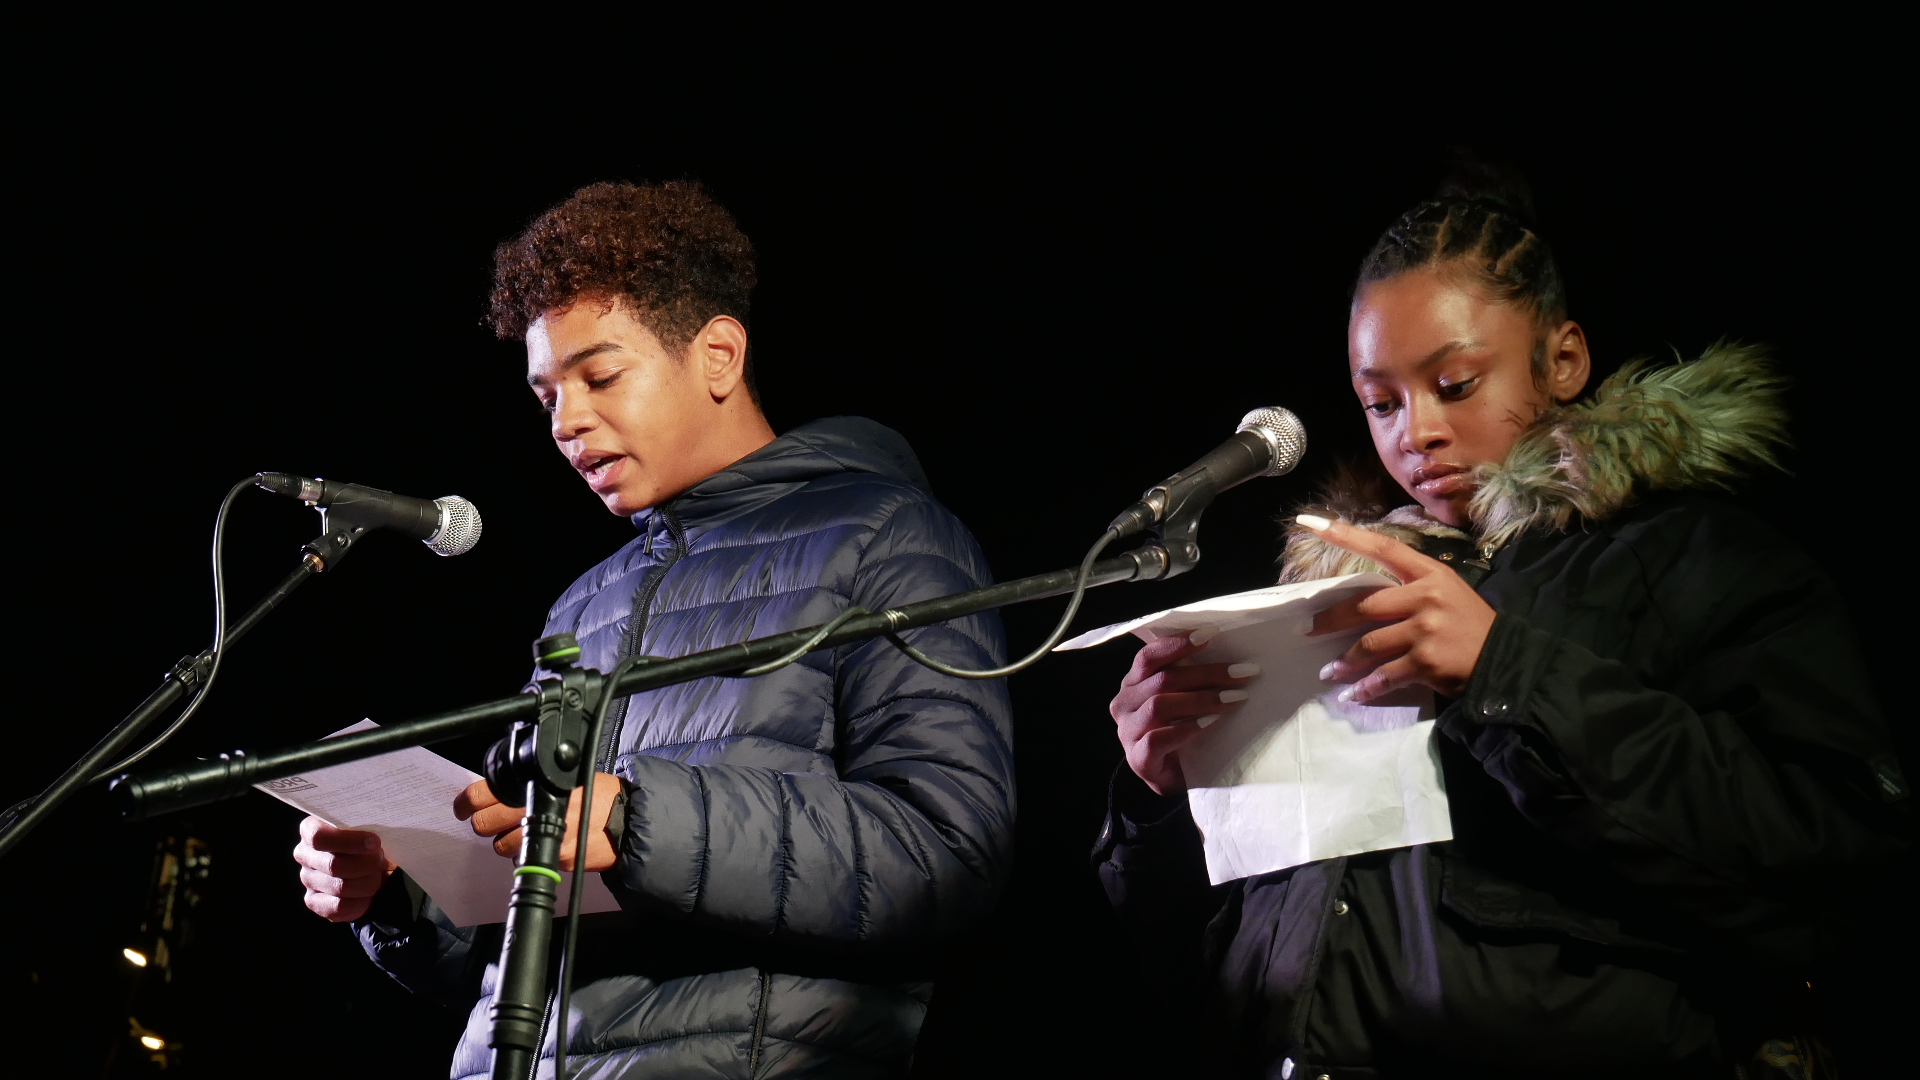 Un noi i una noia llegeixen un manifest amb dos micròfons davant.